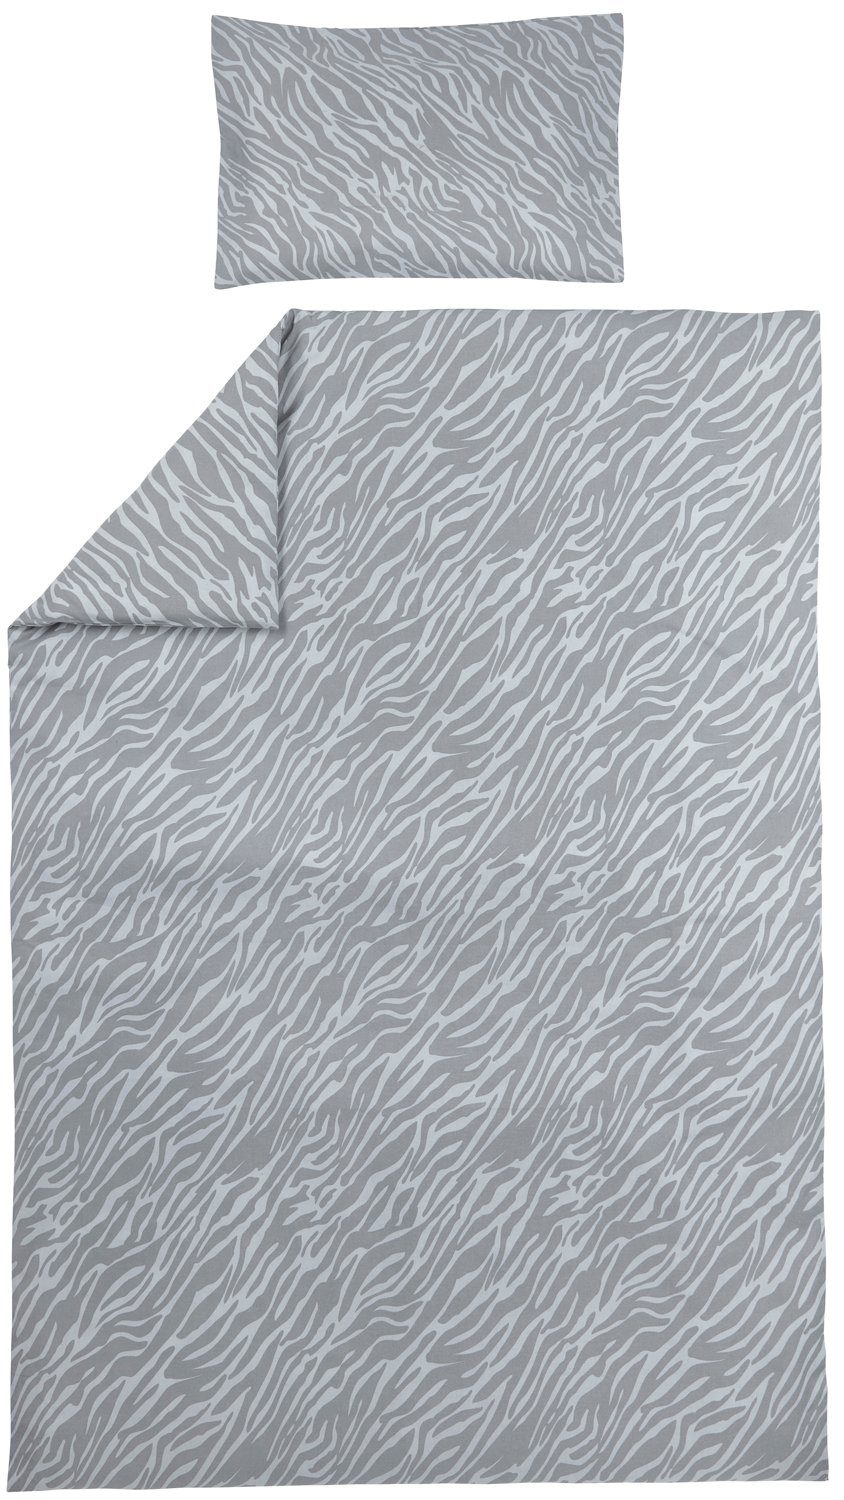 Bettbezug Zebra Grey, Meyco Home, 140x200/220cm